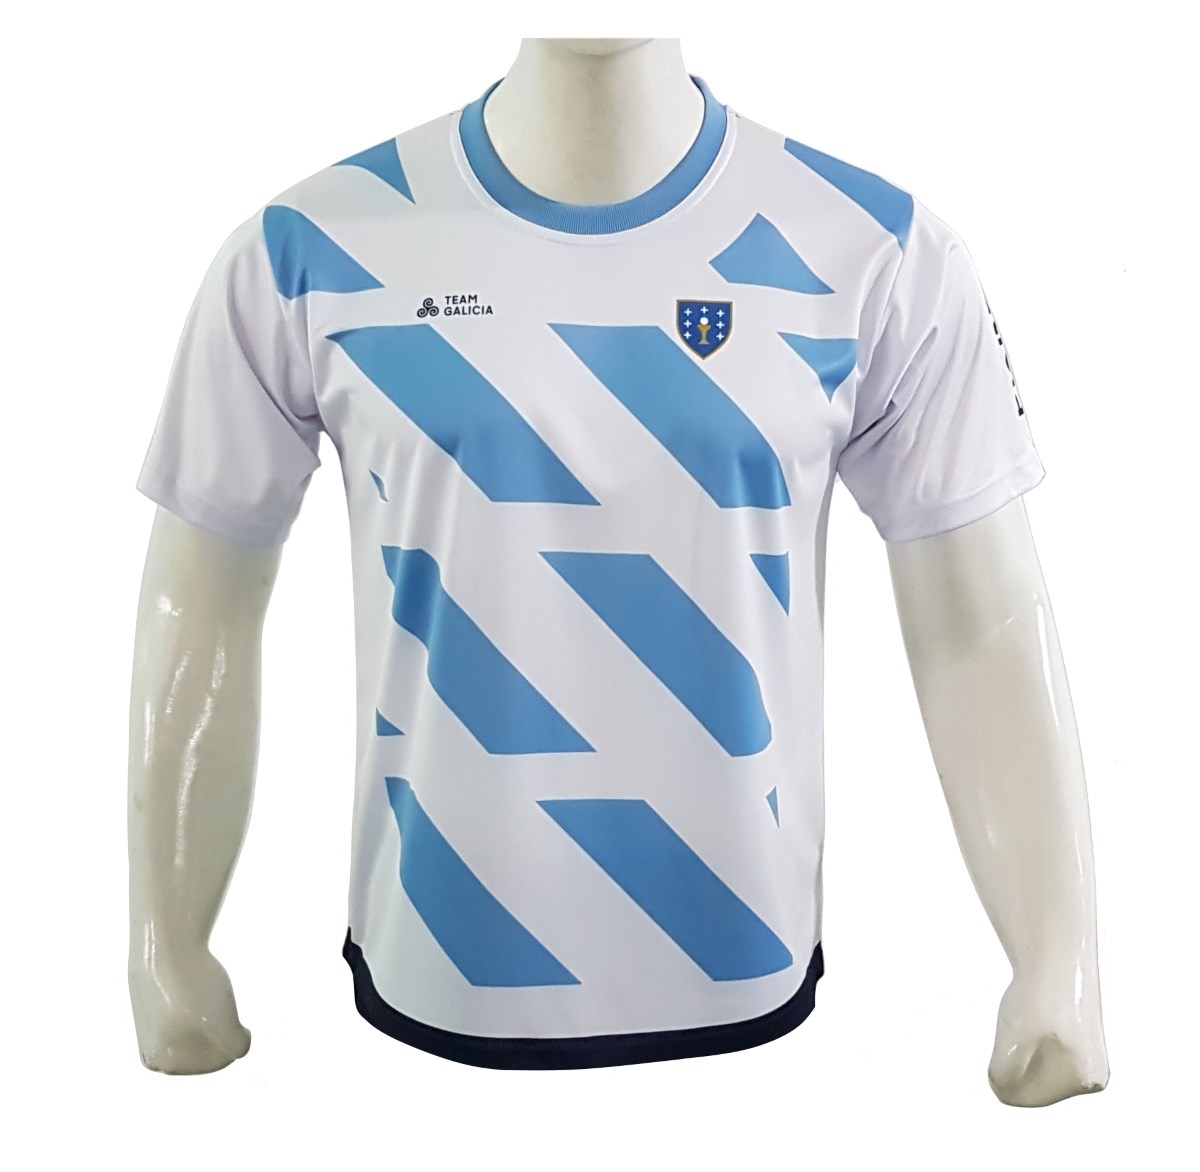 Team Galicia Football Shirt